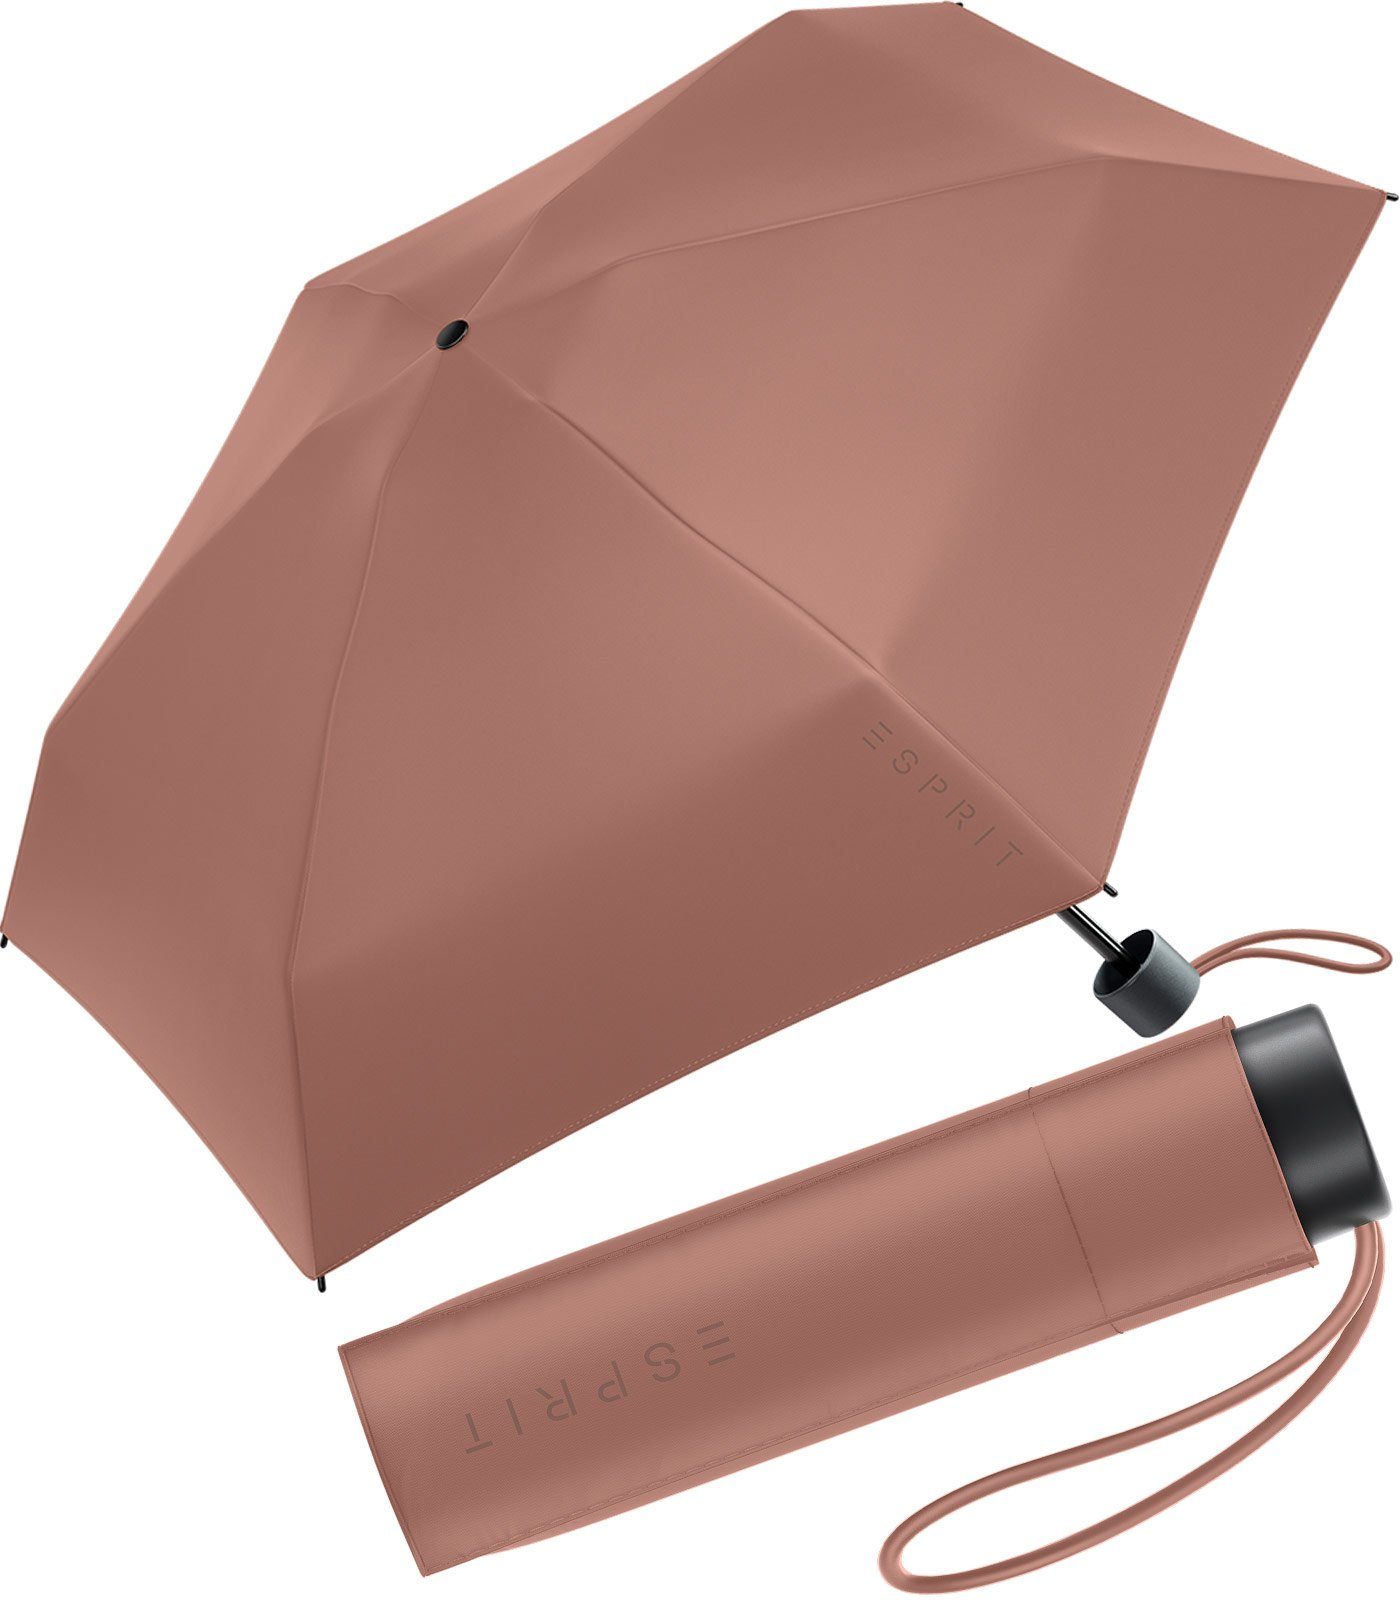 Esprit Langregenschirm Damen Super Mini Regenschirm Petito HW 2023, in den neuen Trendfarben - chutney braun